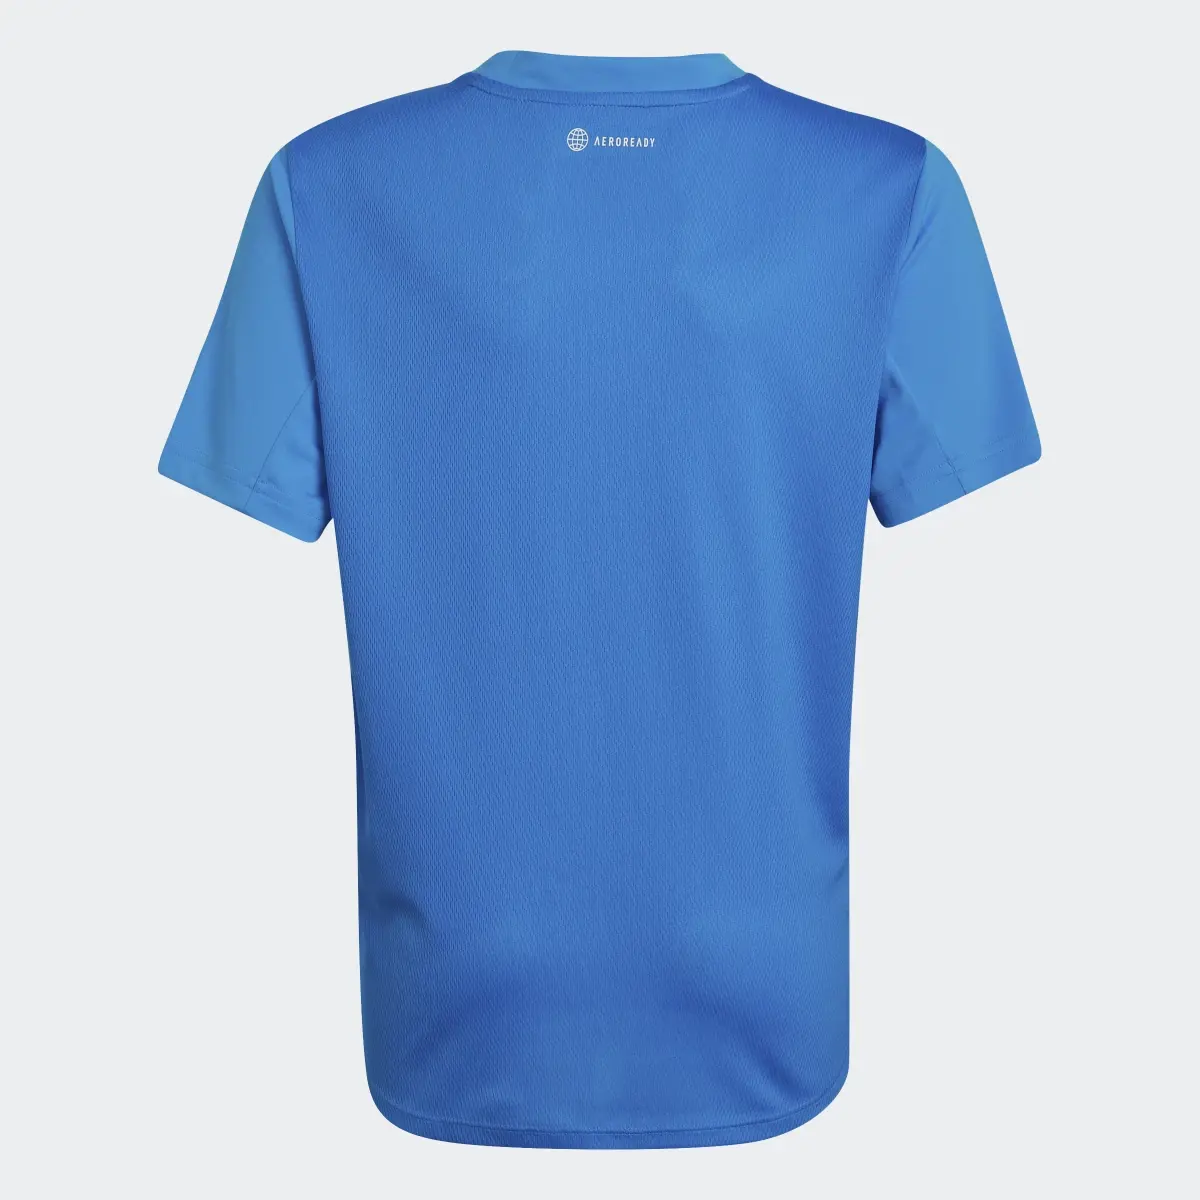 Adidas T-shirt AEROREADY Designed for Sport. 2